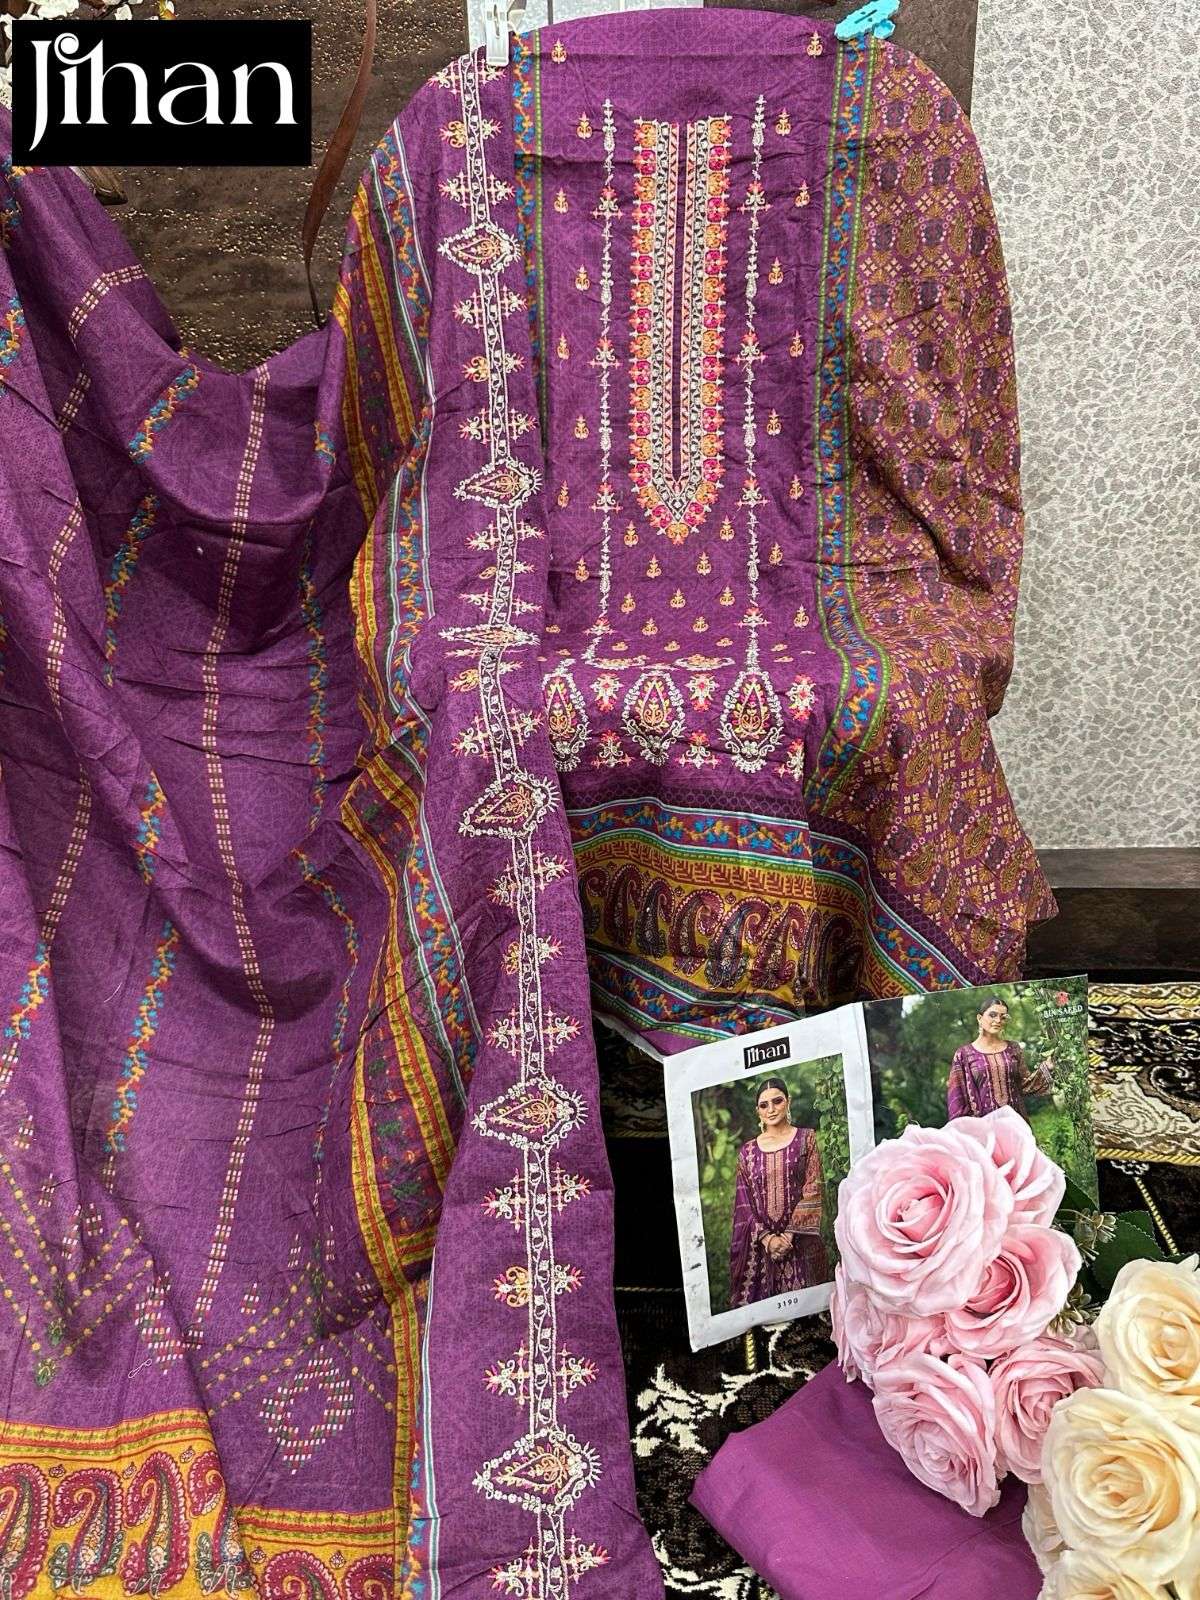 jihan bin saeed lawn collection vol-7 designer pakistani salwar kameez wholesaler surat gujarat